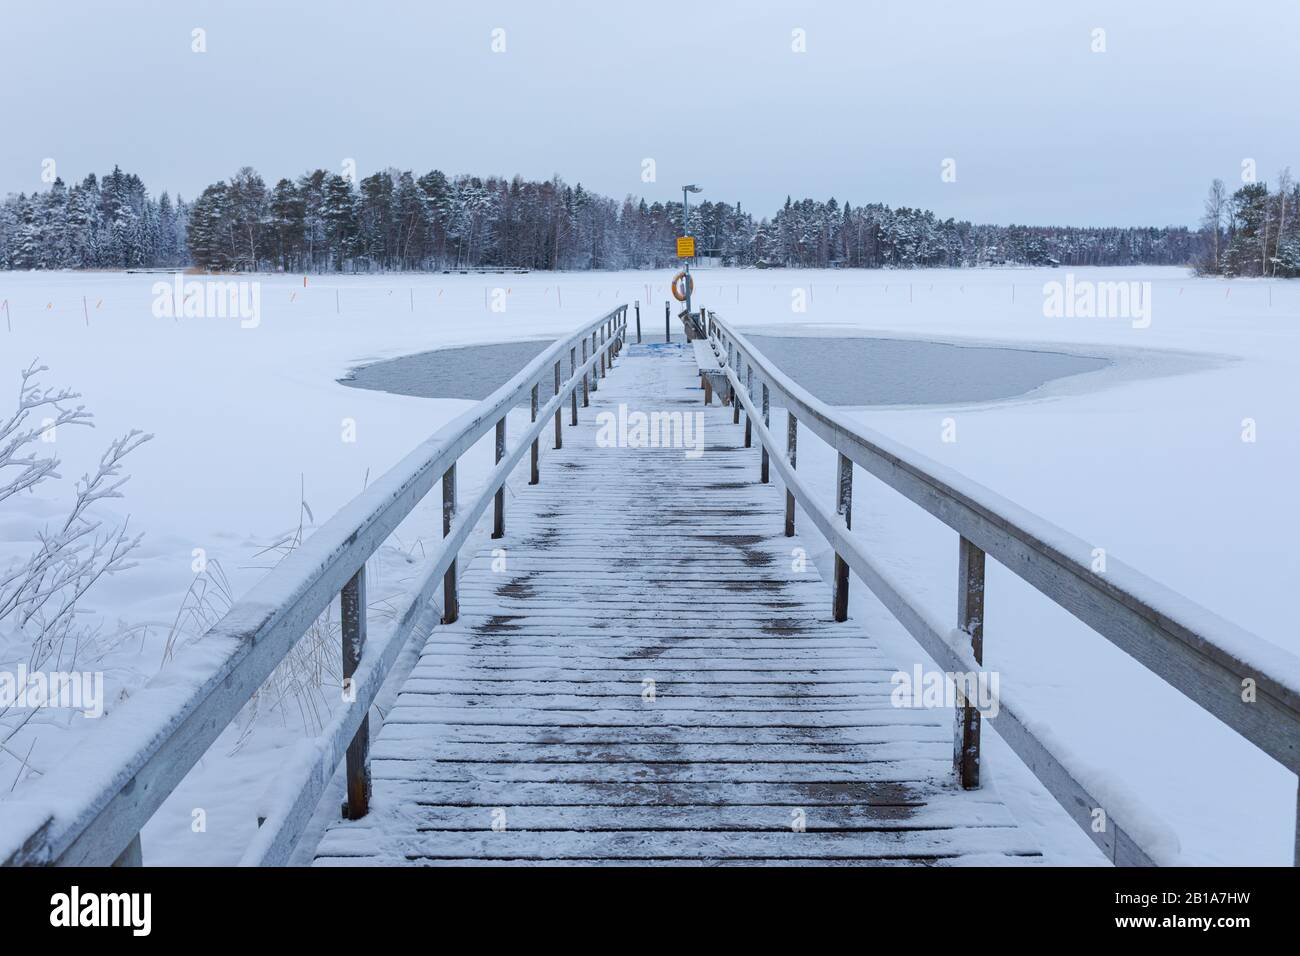 Videz la zone de baignade sur glace en Finlande le jour de l'hiver Banque D'Images